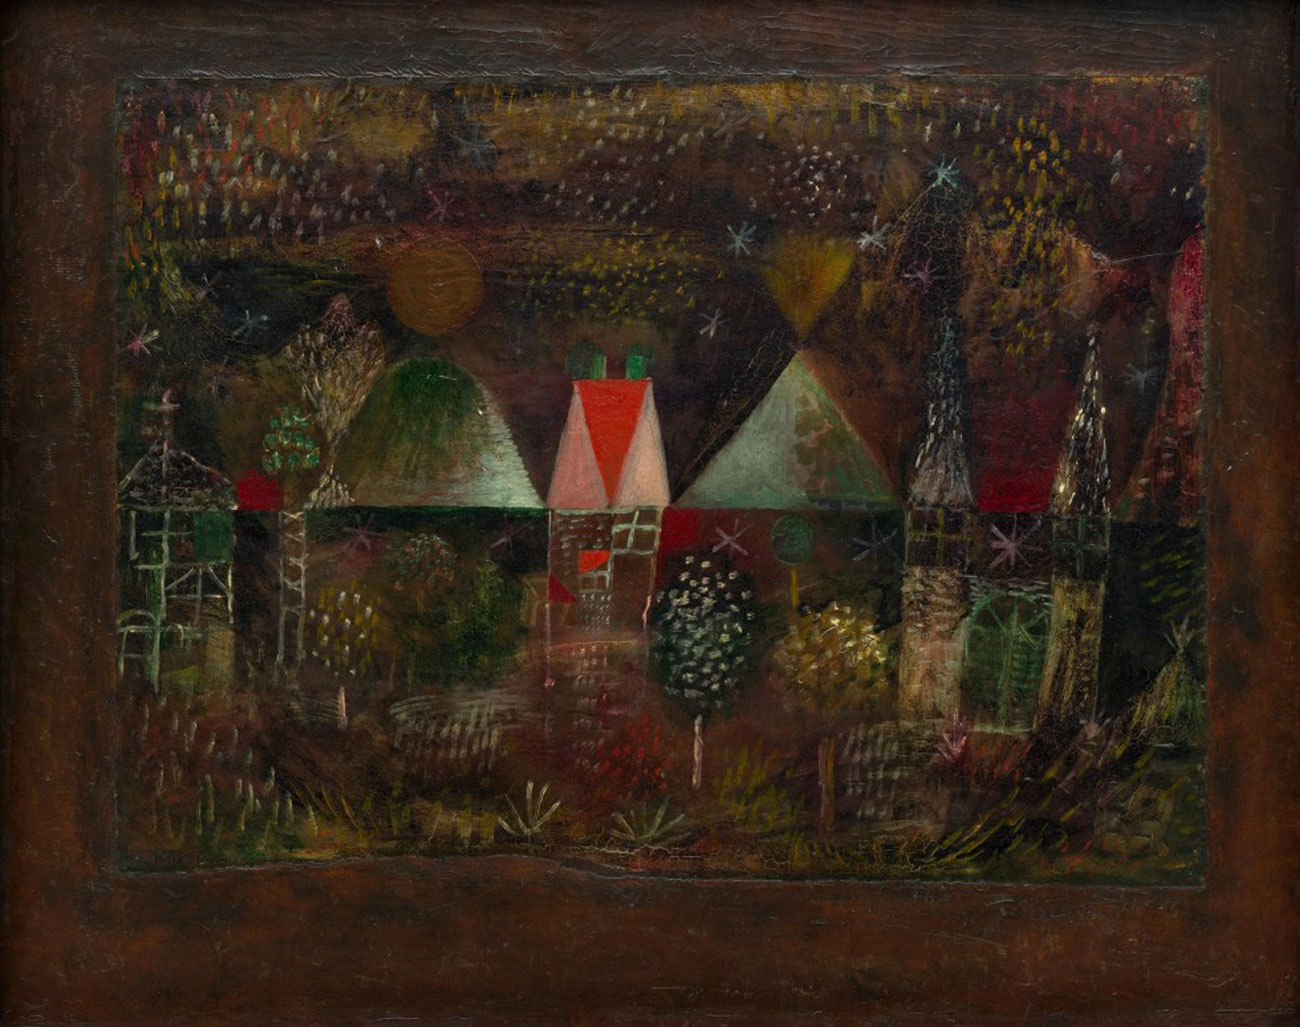 جشن شبانه by Paul Klee - 1921 - 36,9 x 49,8 cm 